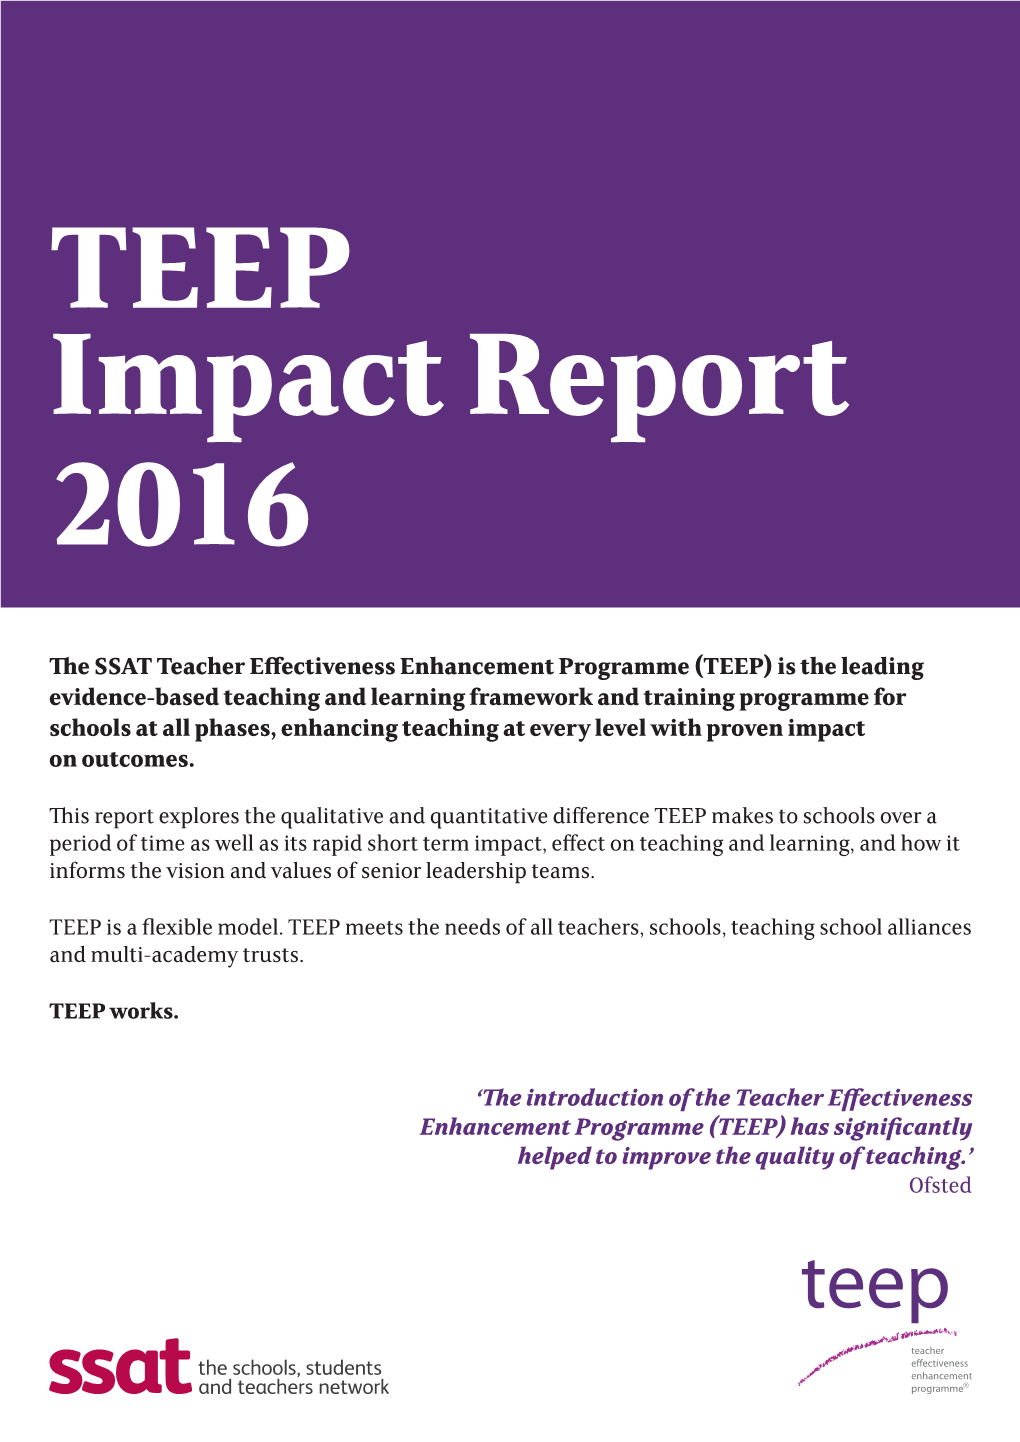 The SSAT Teacher Effectiveness Enhancement Programme (TEEP